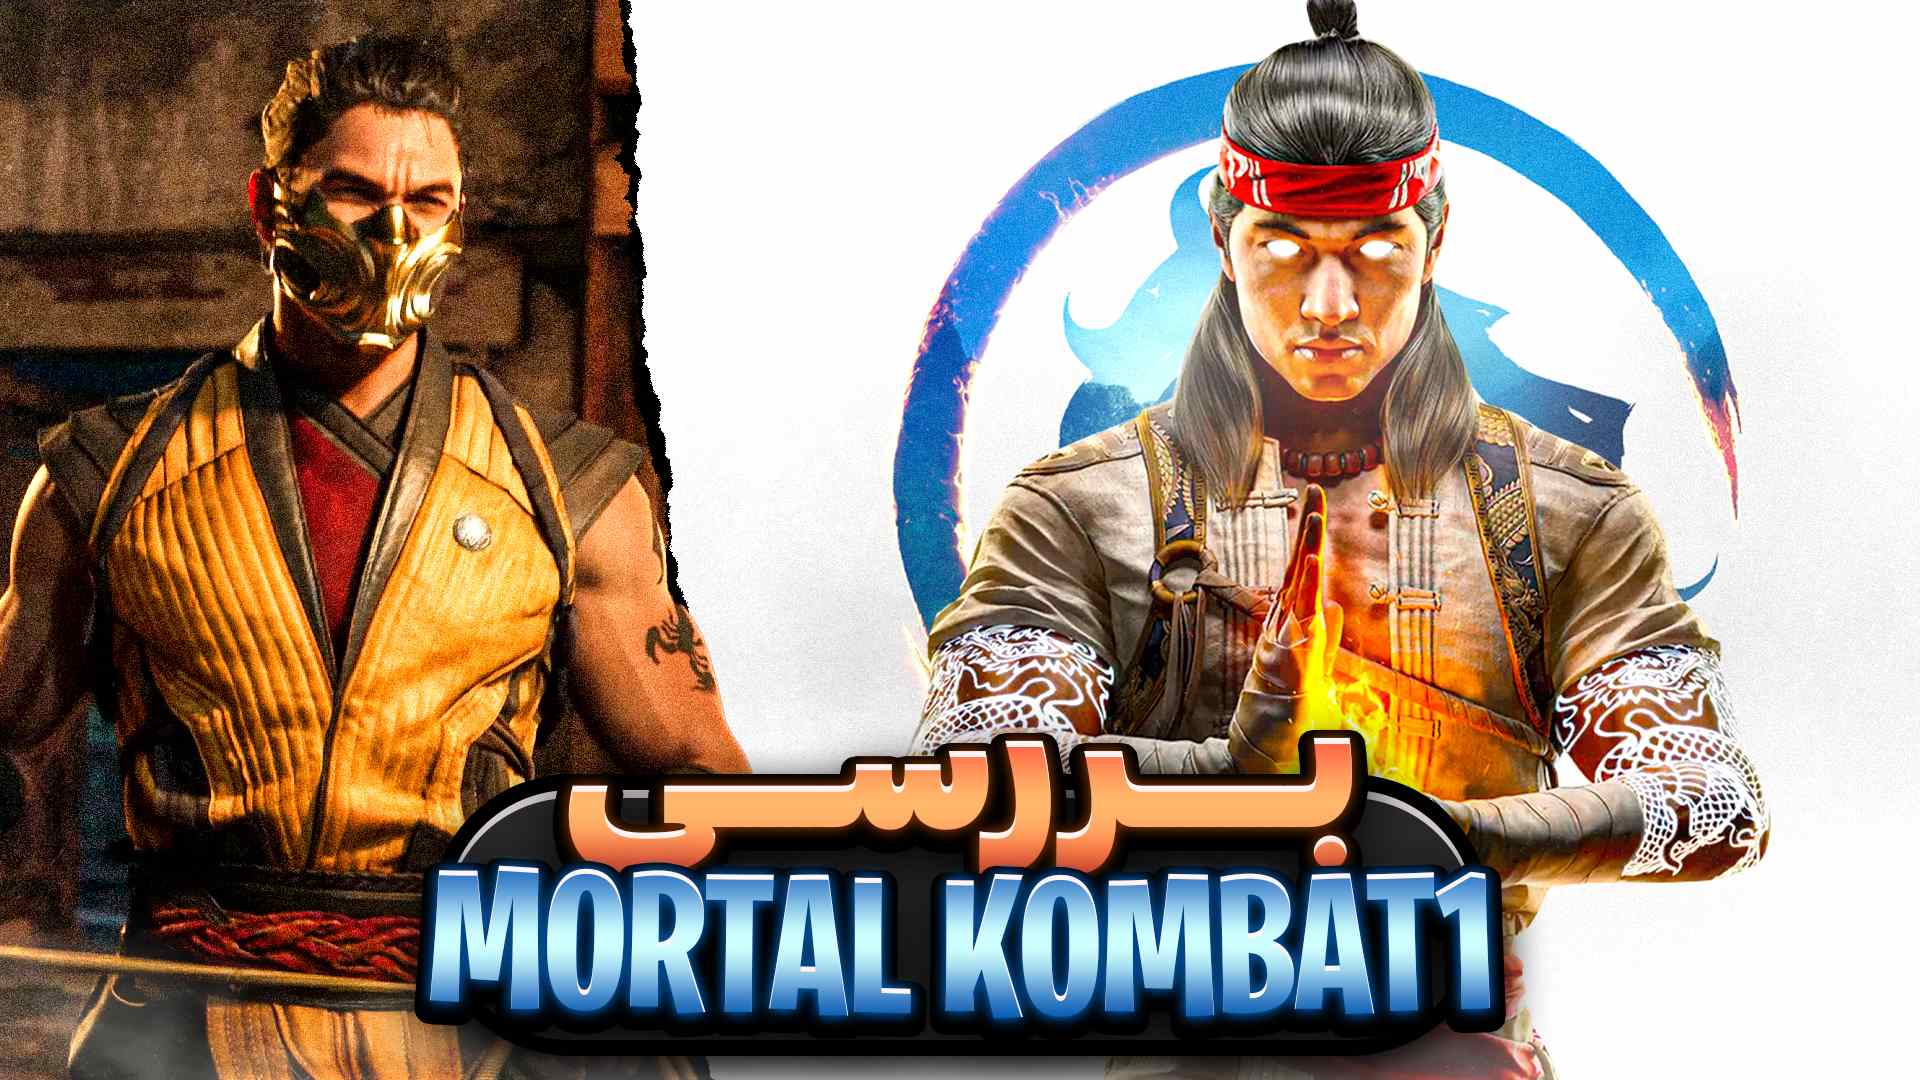 بررسی بازی مورتال کمبت ۱ | نقد بازی Mortal Kombat 1 + امتیاز